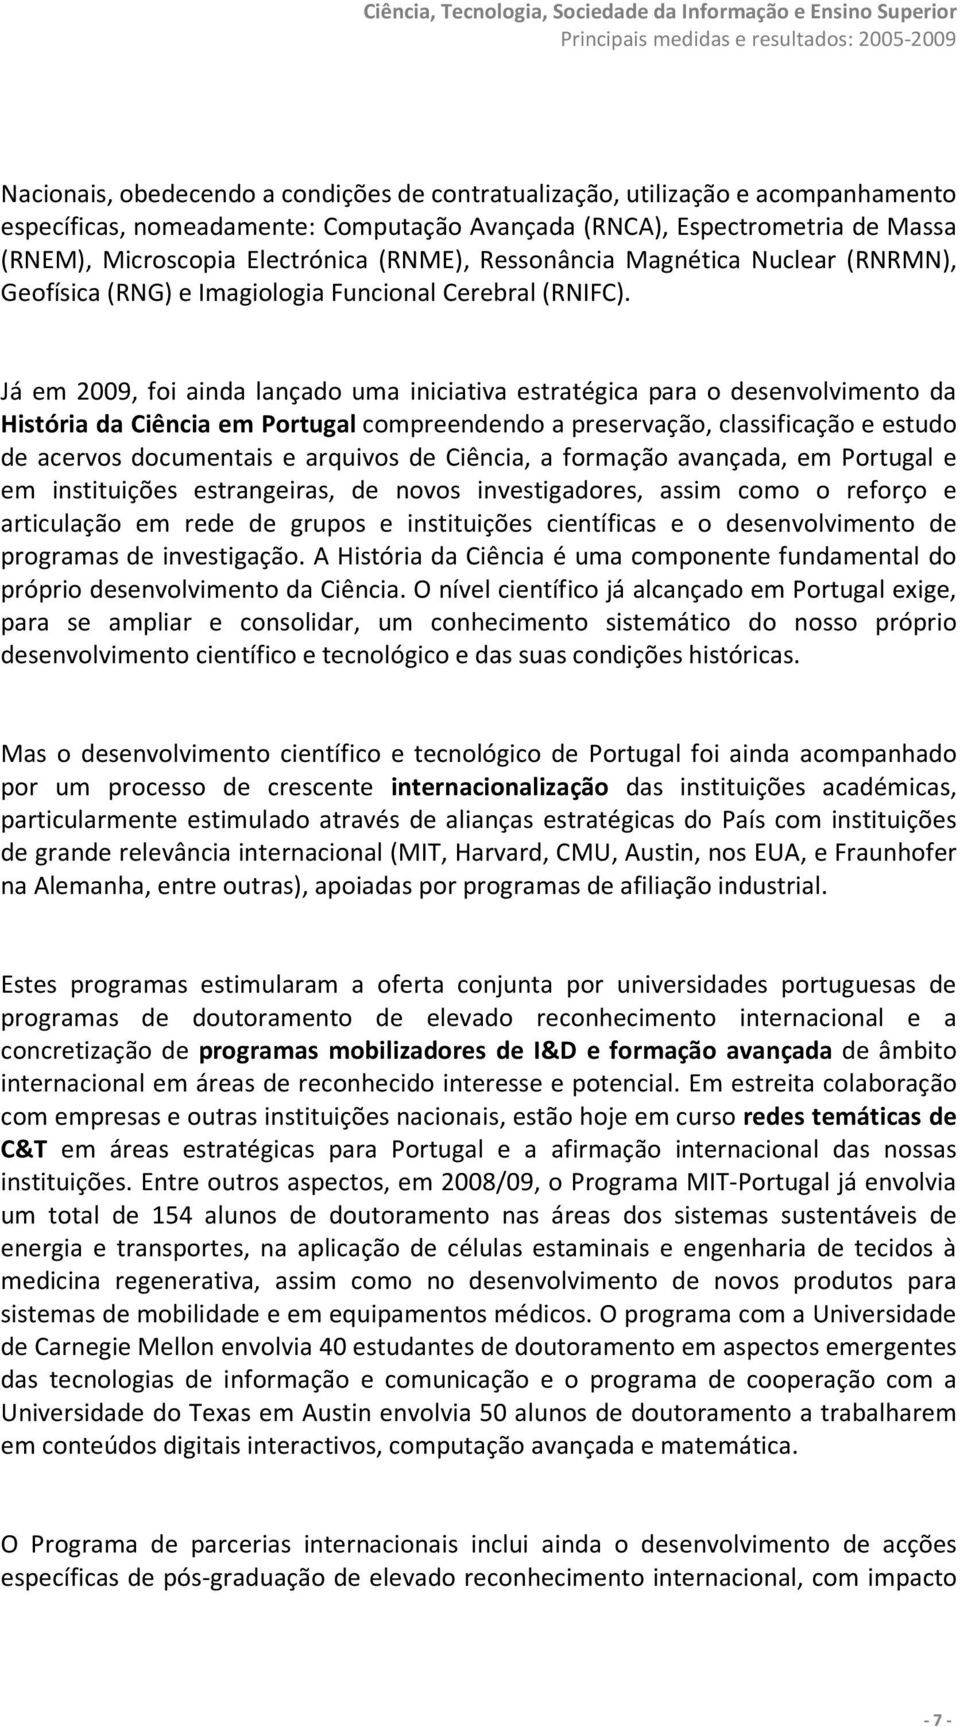 Já em 2009, foi ainda lançado uma iniciativa estratégica para o desenvolvimento da História da Ciência em Portugal compreendendo a preservação, classificação e estudo de acervos documentais e